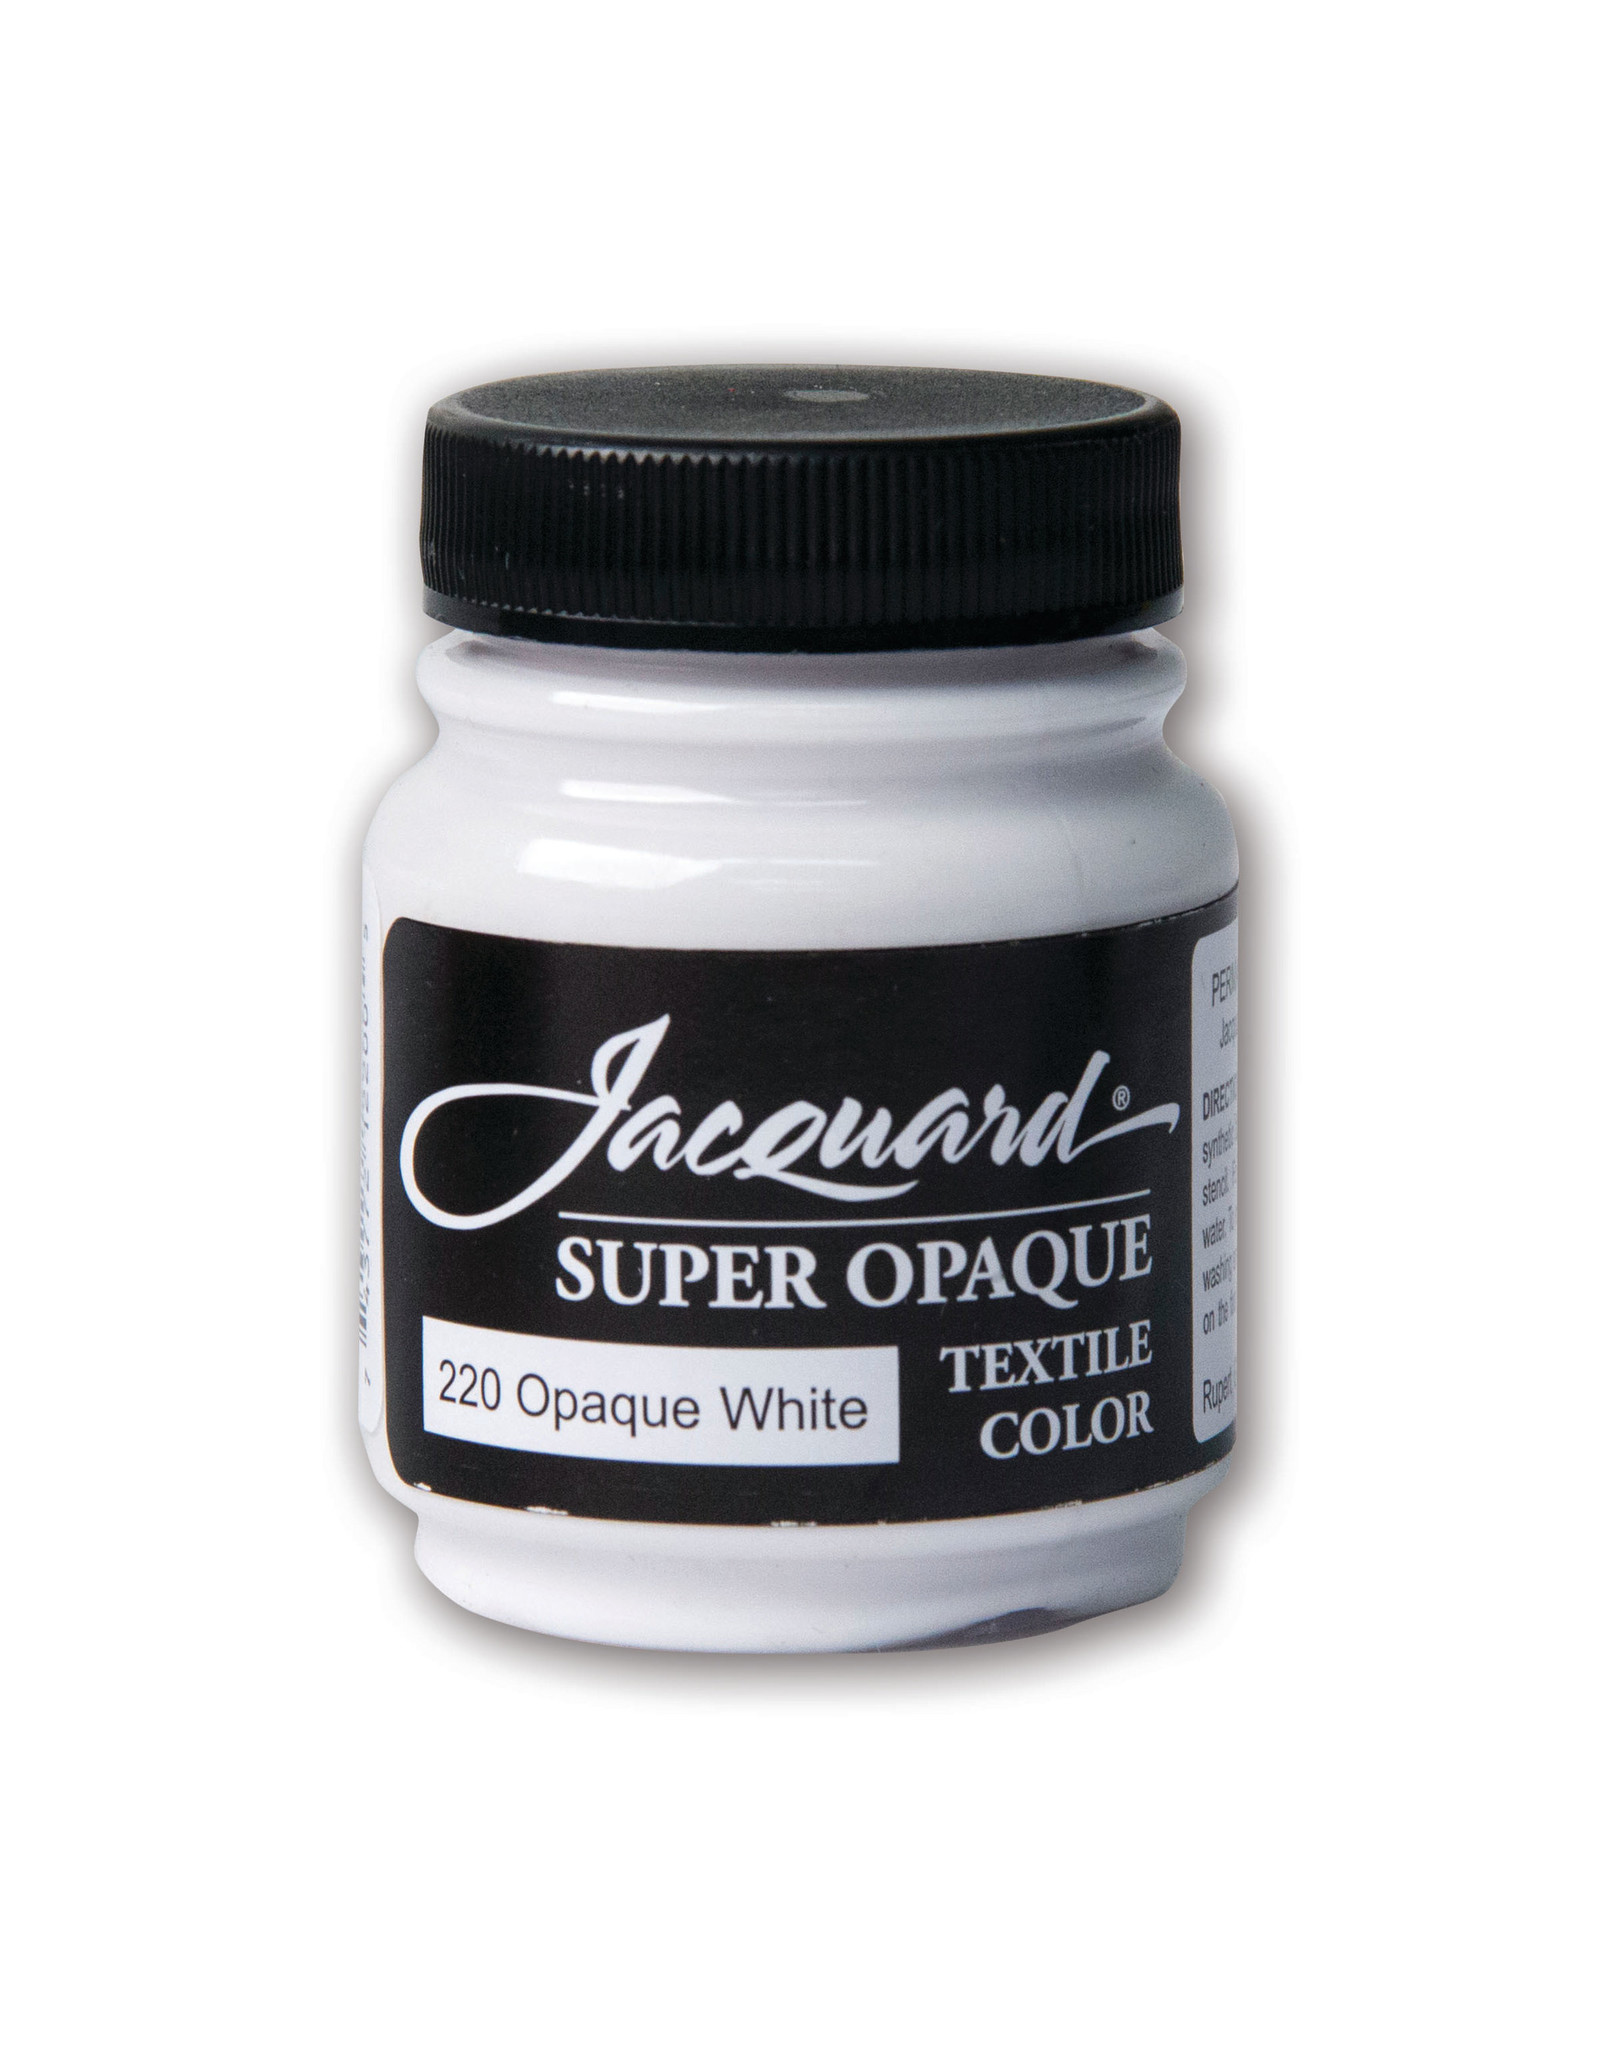 Jacquard Jacquard Textile Color, #220 Super Opaque White